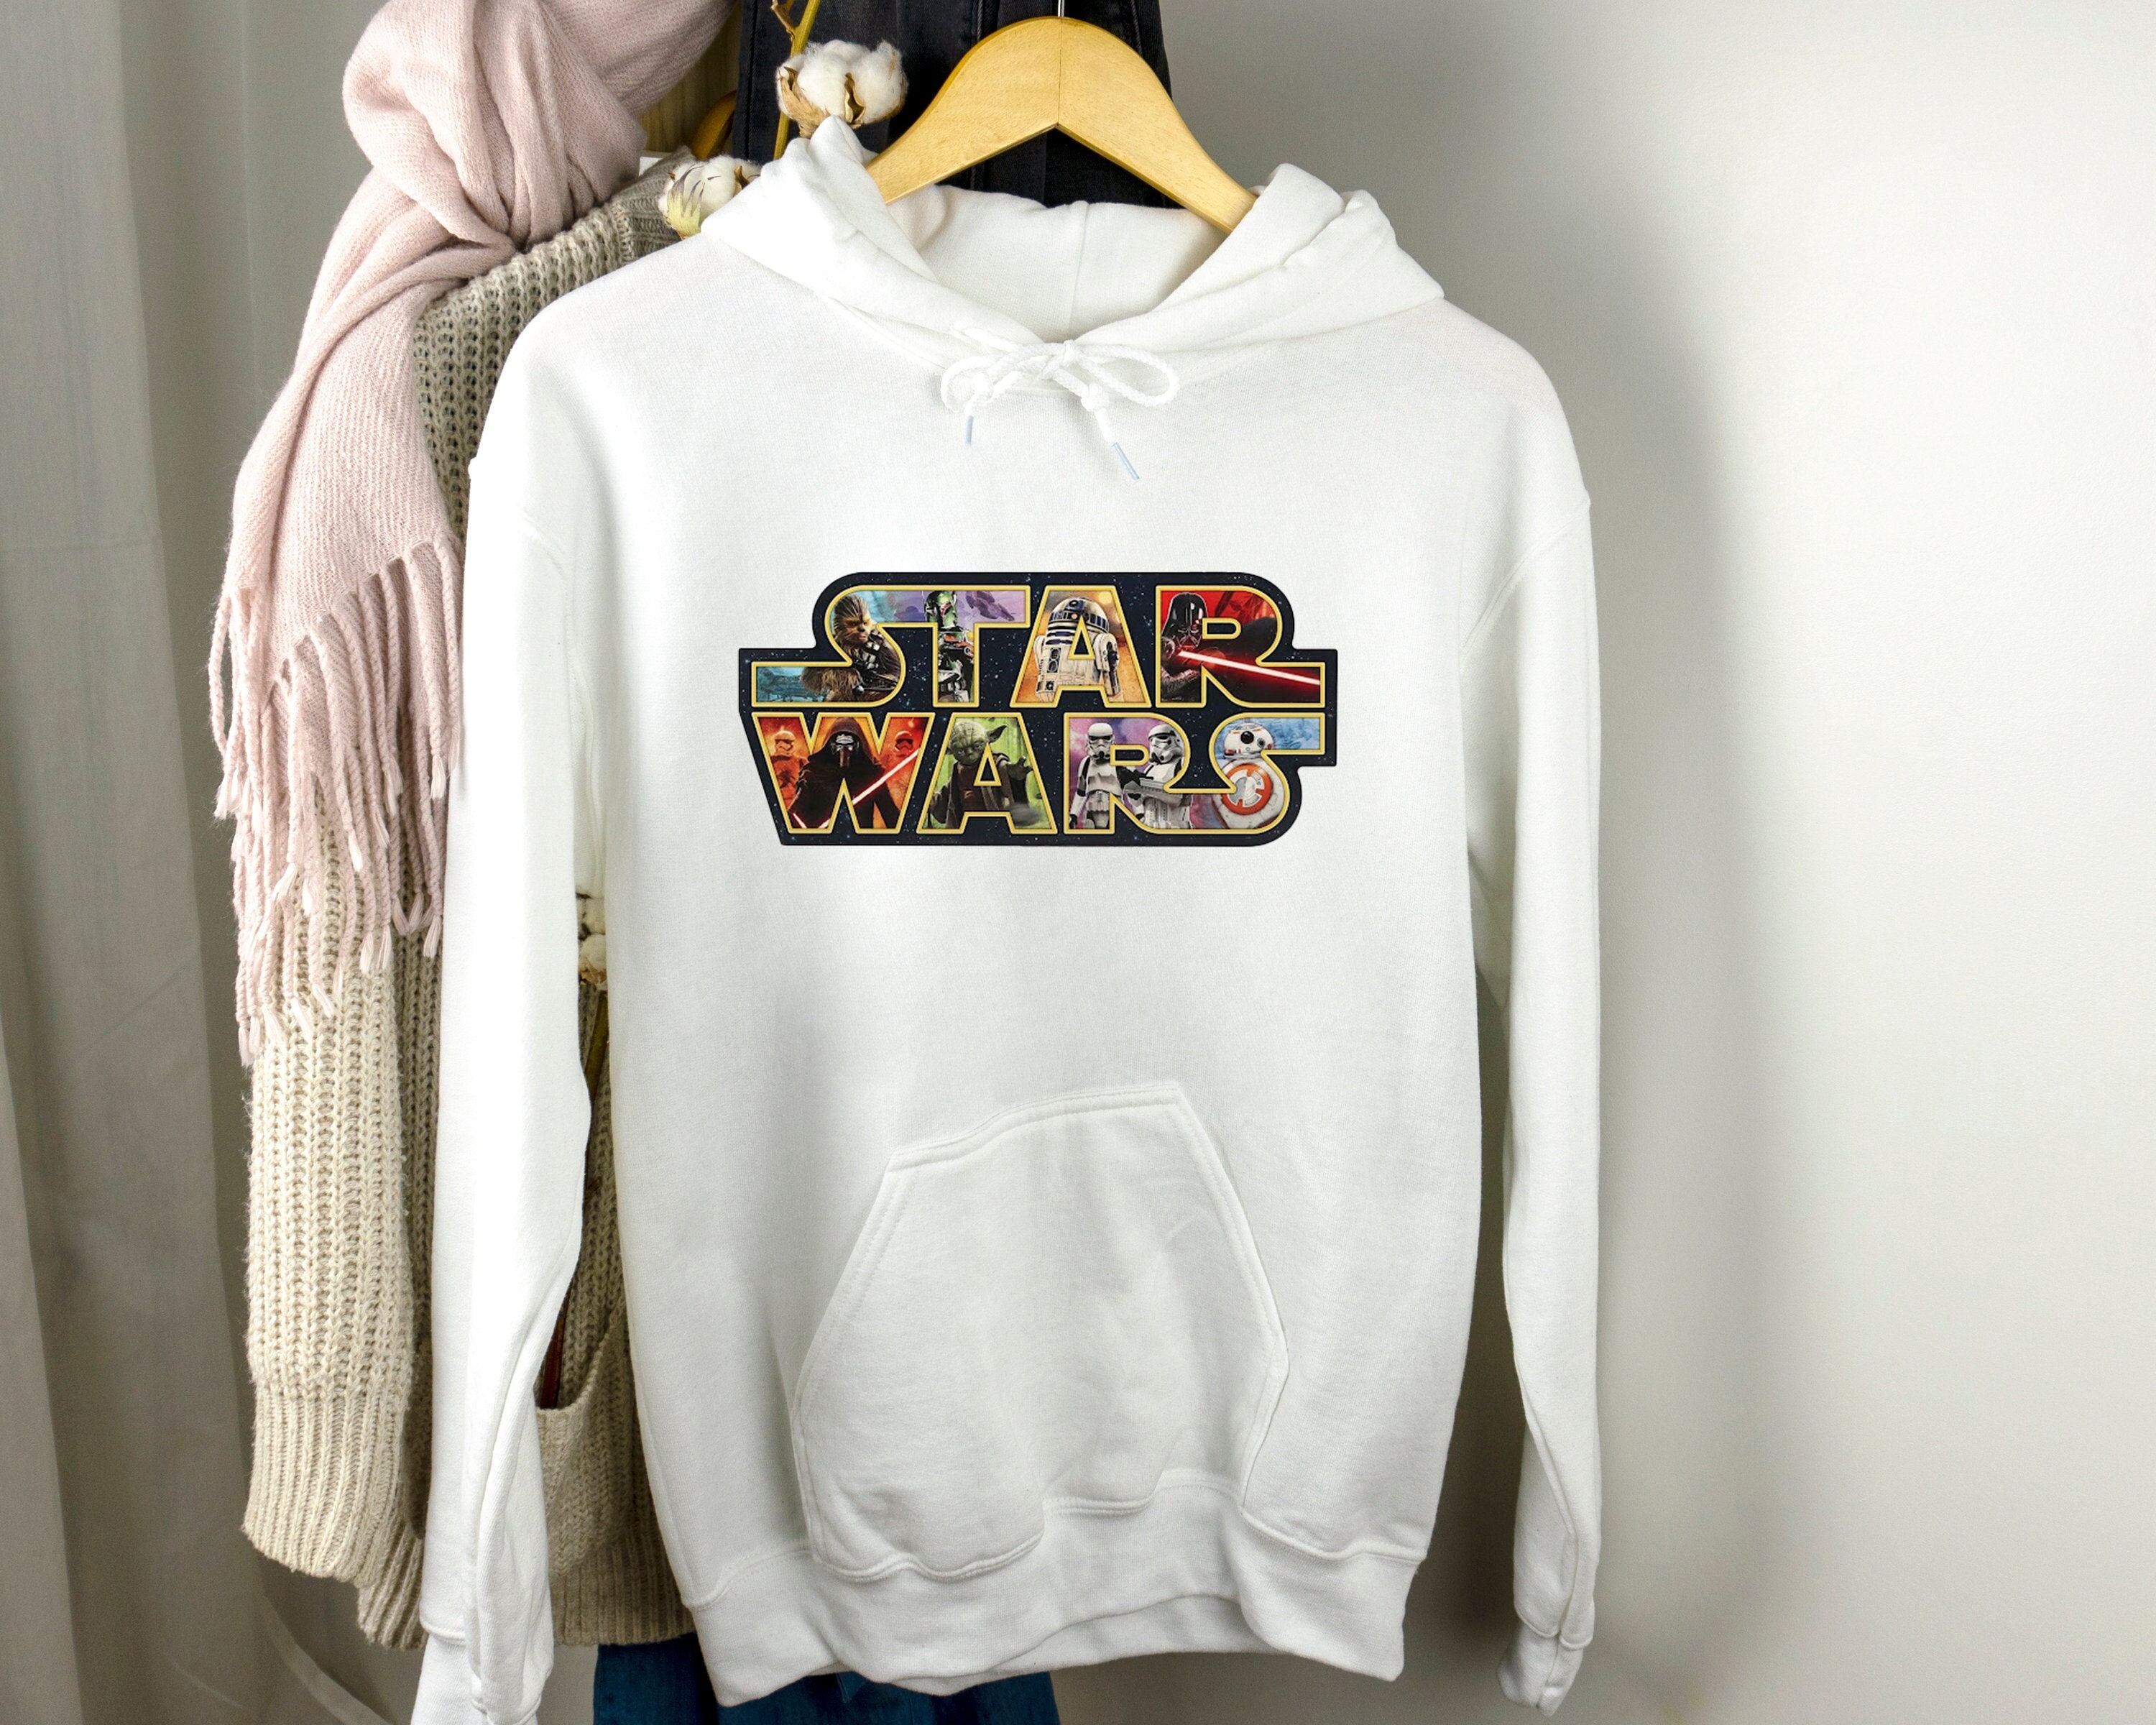 Metallic Foil Star Wars Sweater Terez Sweatshirt for Women Warm Fall/Winter Pullover 